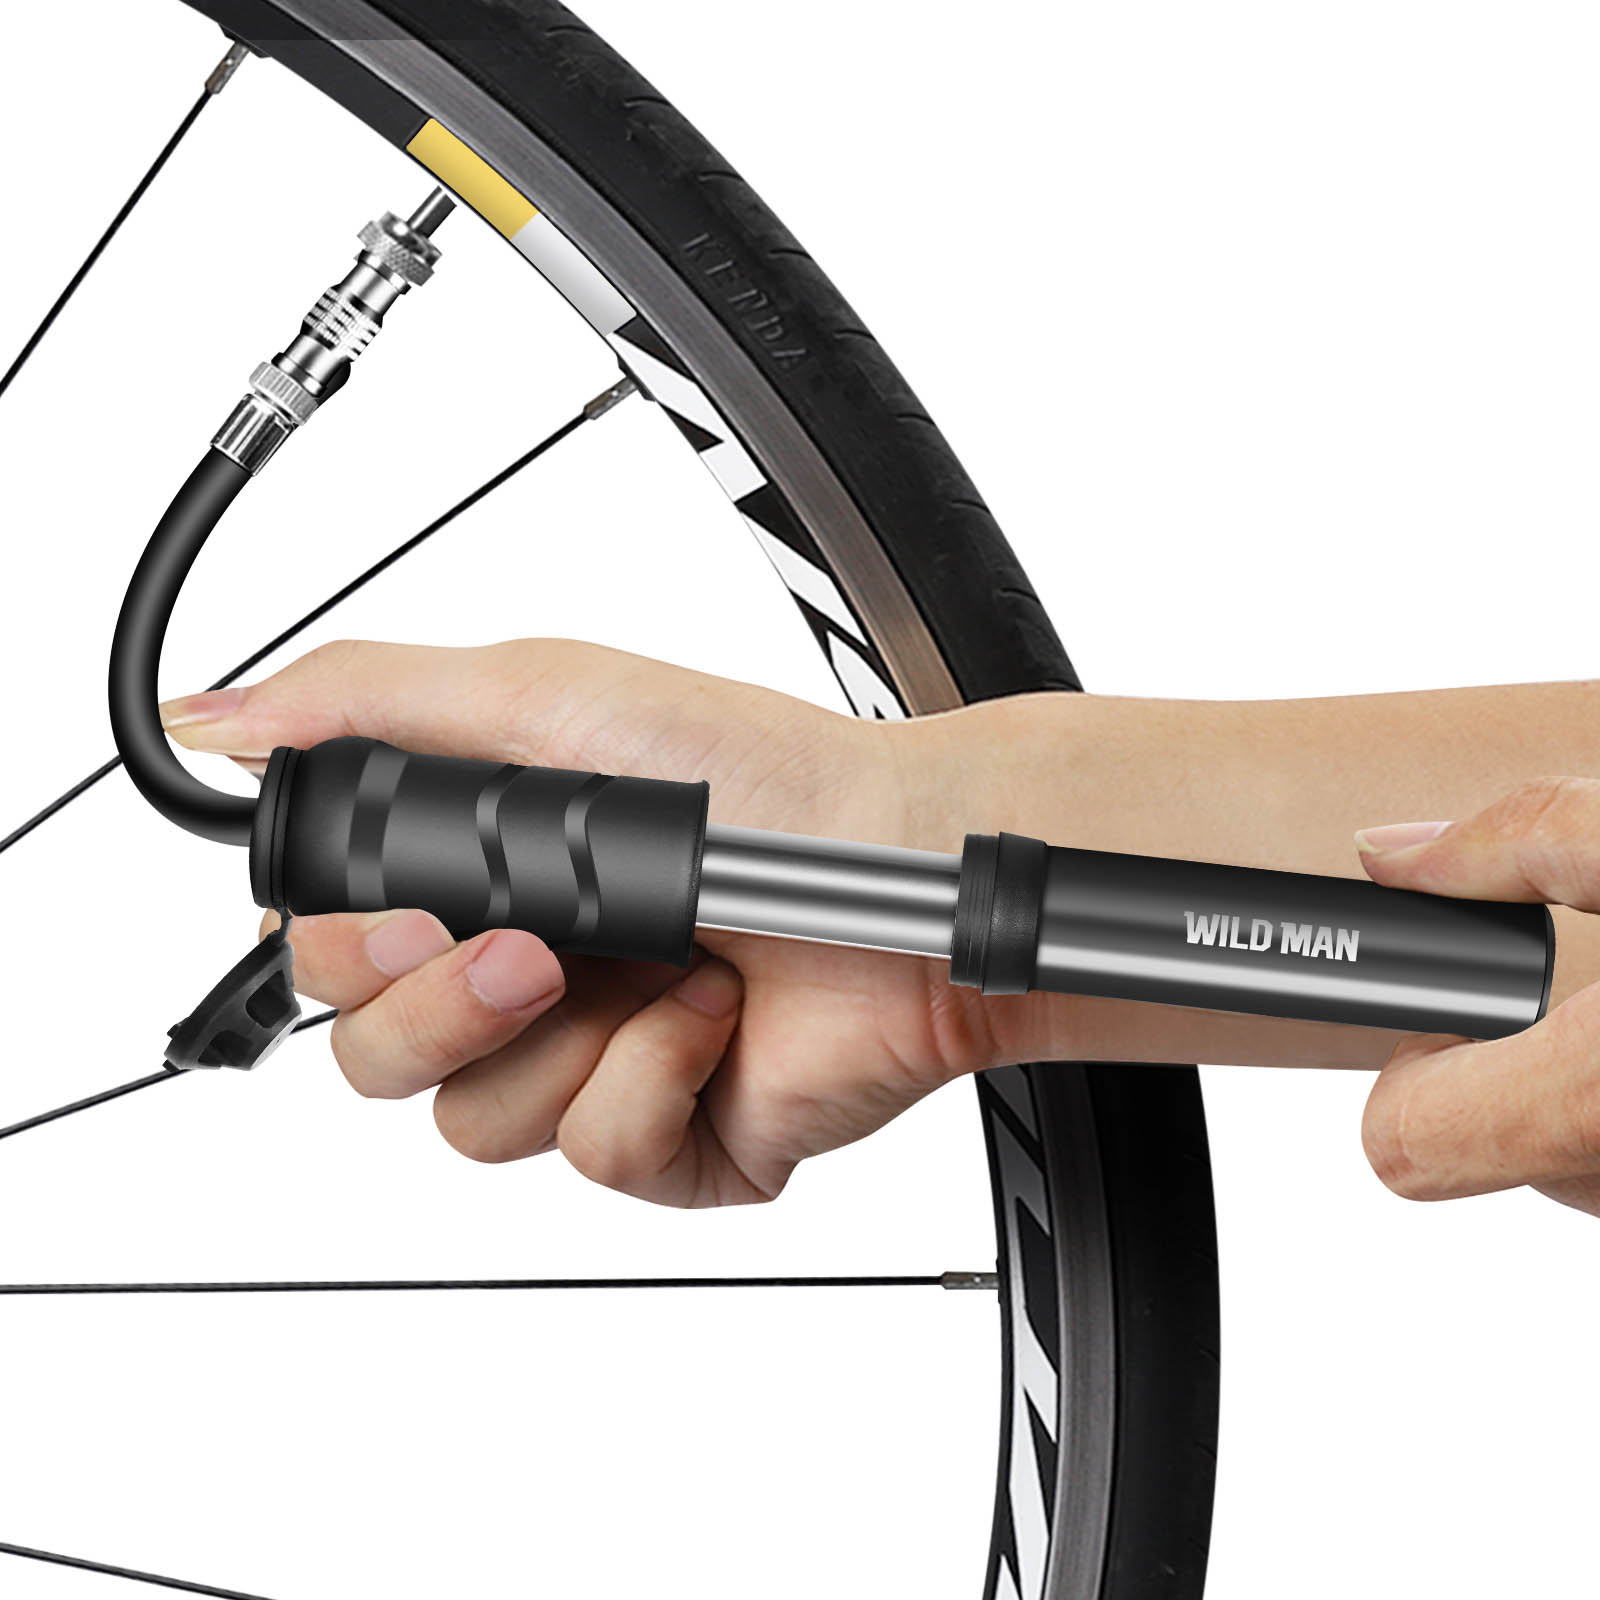 Pompa a mano per bicicletta e monopattino, design tascabile - Wildman -  Italiano